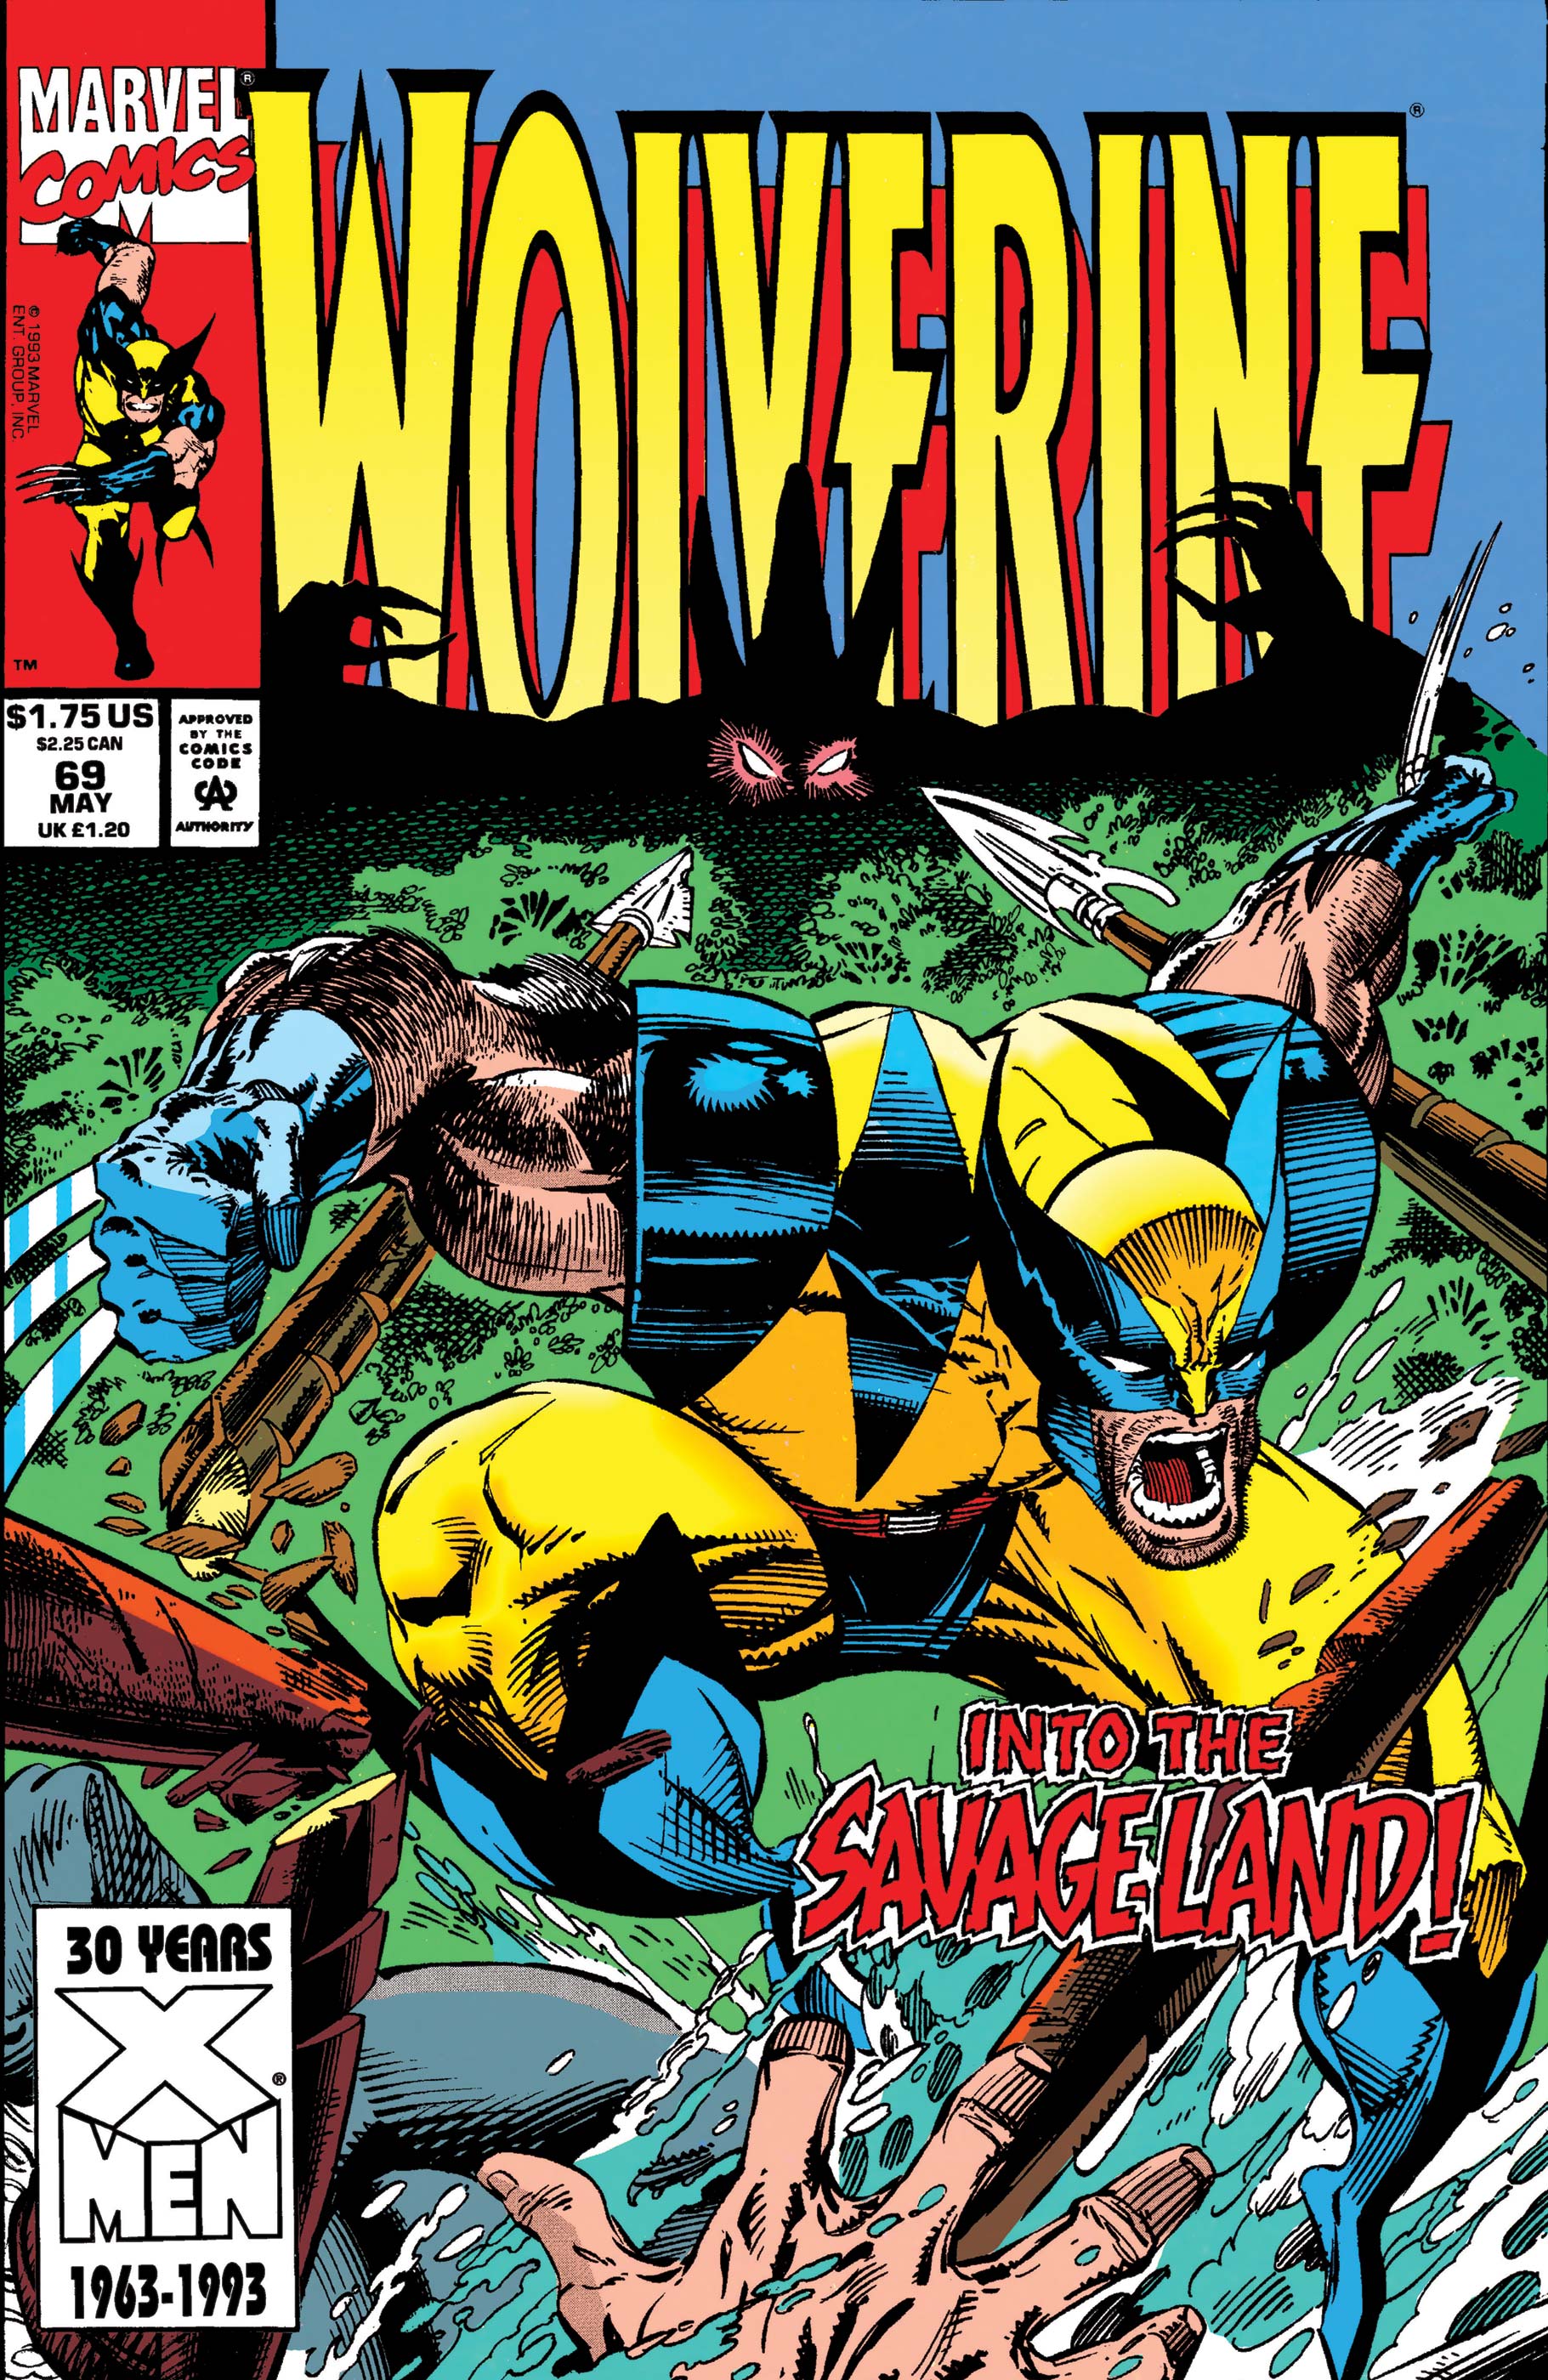 Wolverine (1988) #69